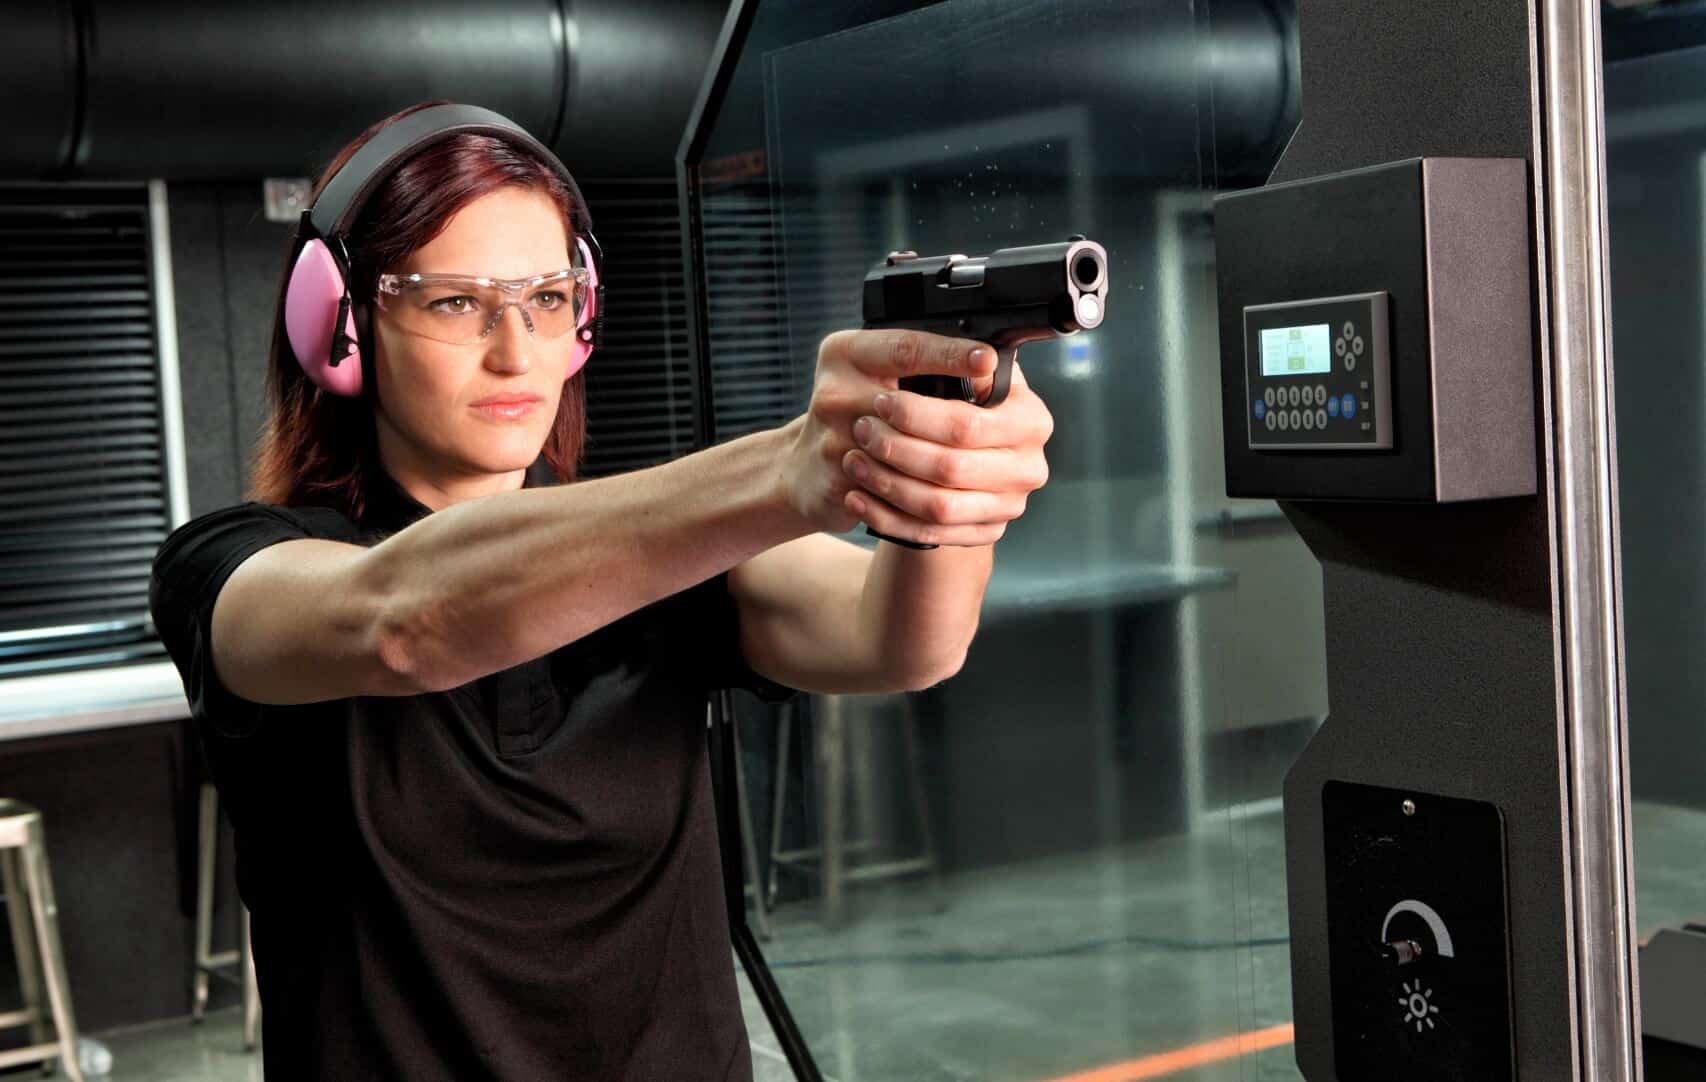 Femme-avec-des-lunettes-de-securite-et-un-casque-qui-tir-avec-un-pistolet-dans-stand-indoor